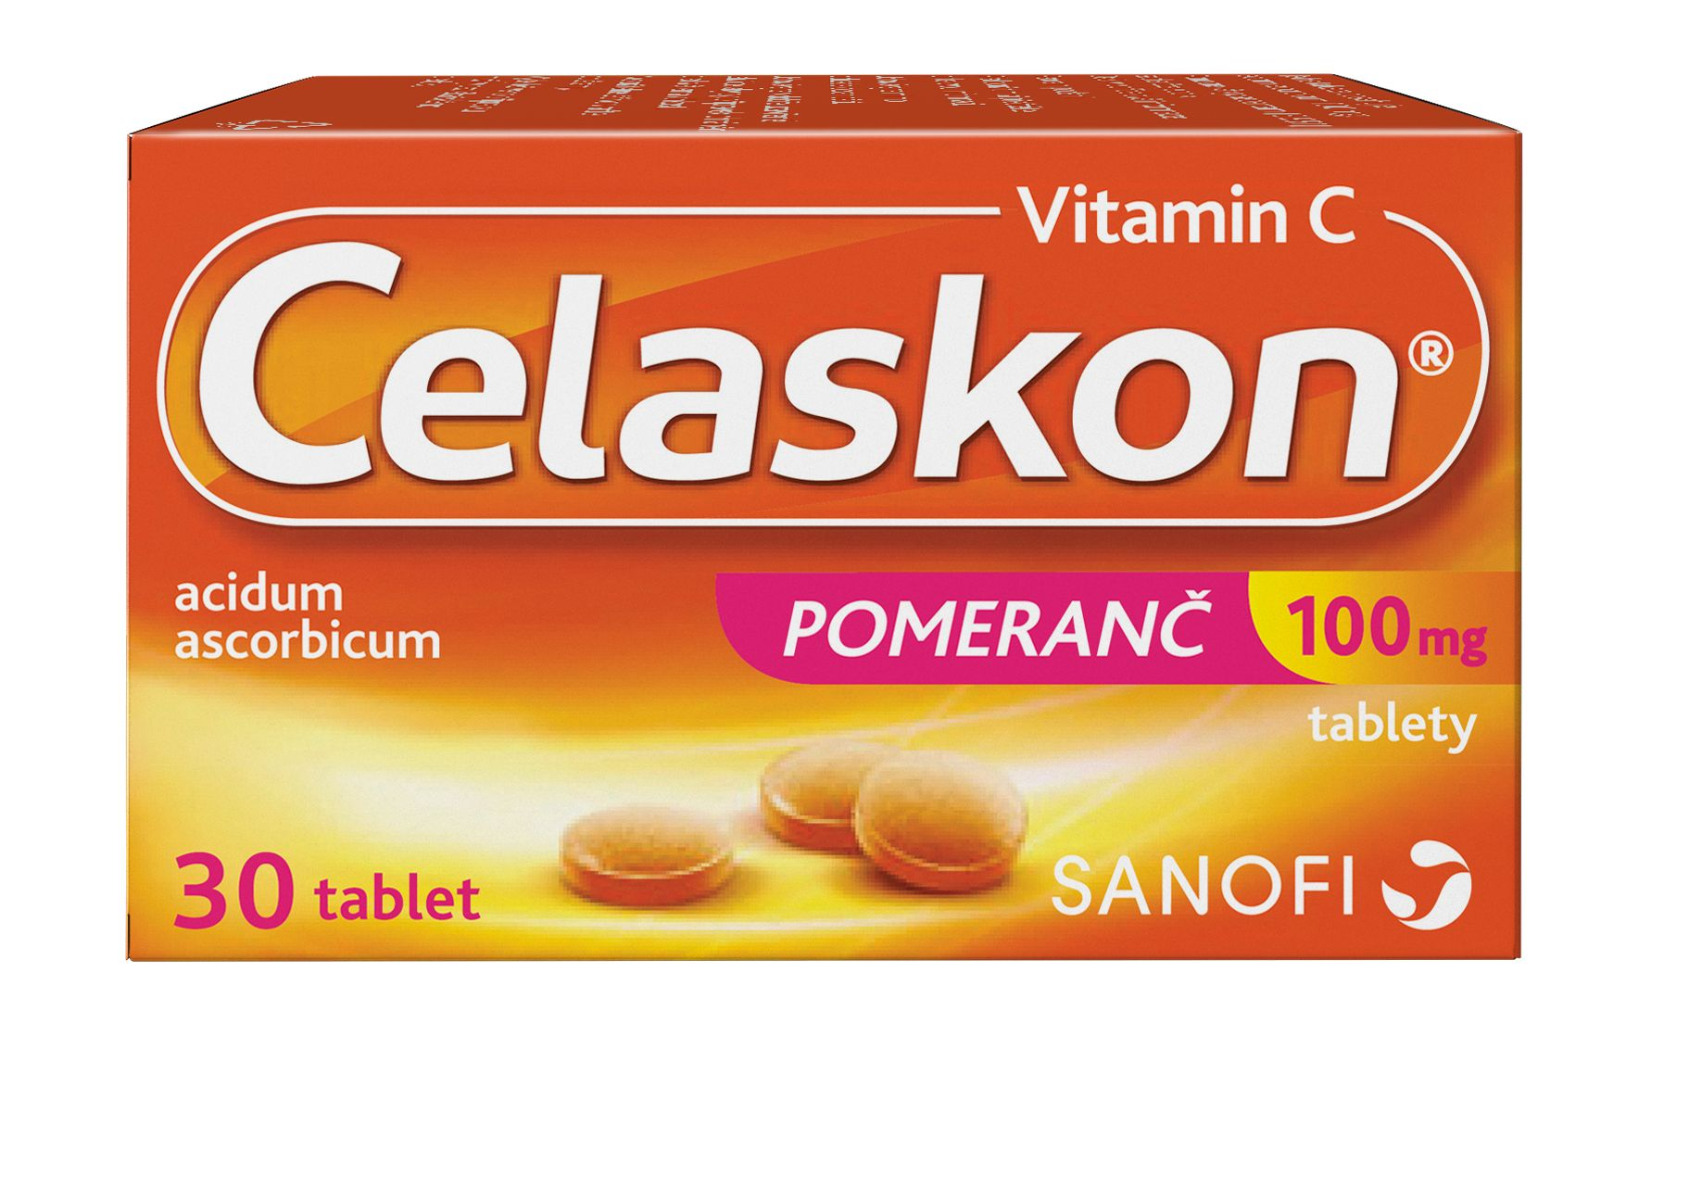 Celaskon Pomeranč 100 mg 30 tablet Celaskon